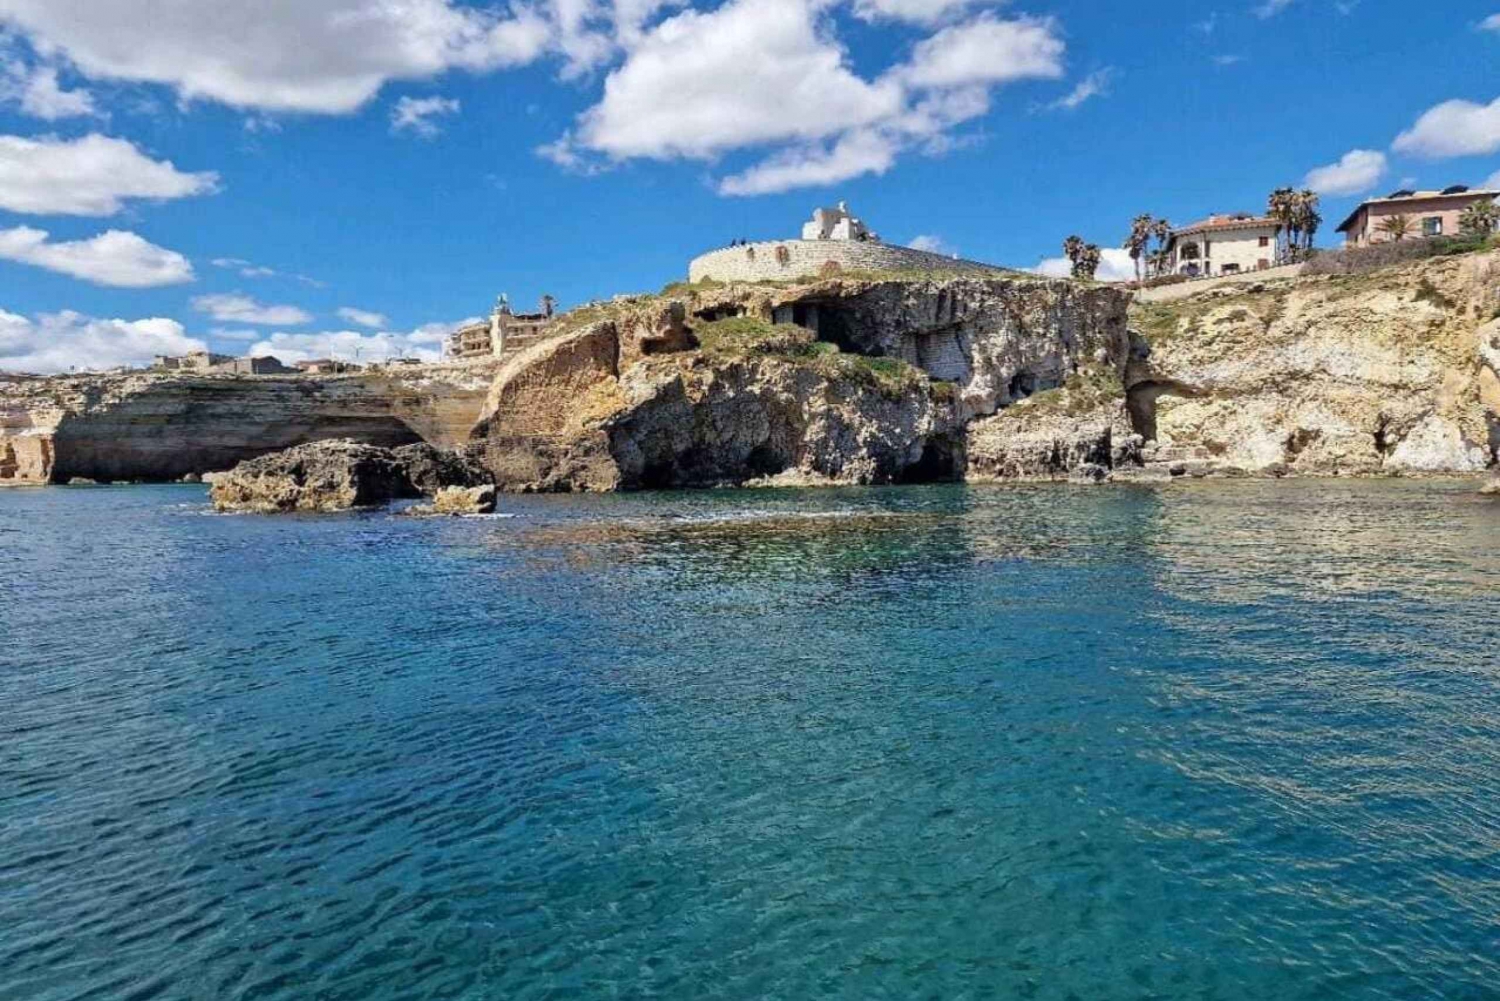 Bådtur til øen Ortigia og havets grotter